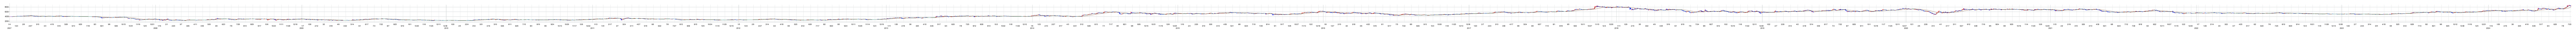 タキロンシーアイの株価チャート